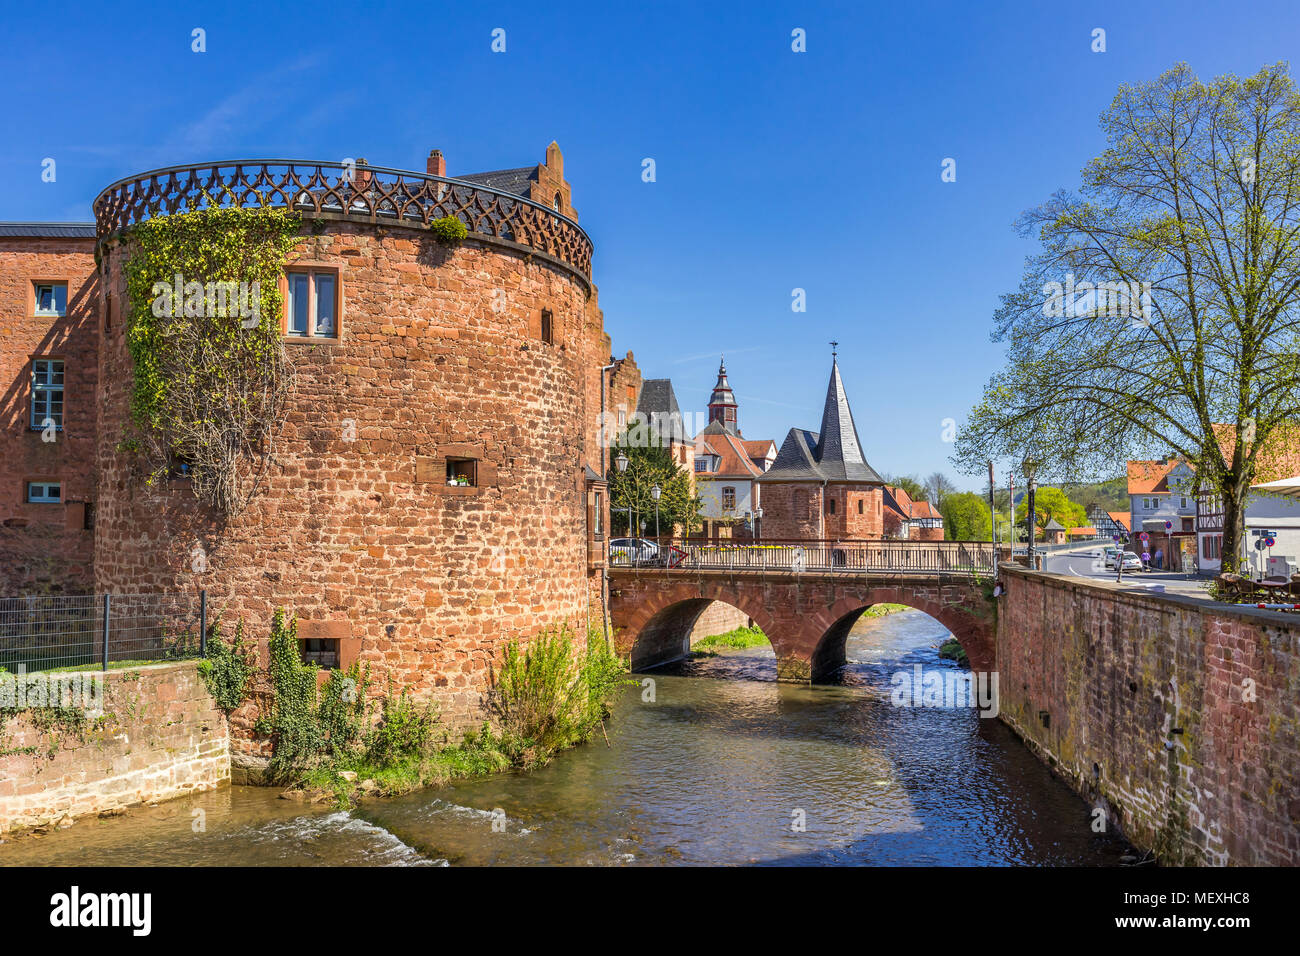 Centre-ville historique de Büdingen, Hesse, Germany, Europe, avec la tour Melior Melior,'s House, Schlaghaus, Mill Gate Bridge sur la rivière Seemenbach Banque D'Images